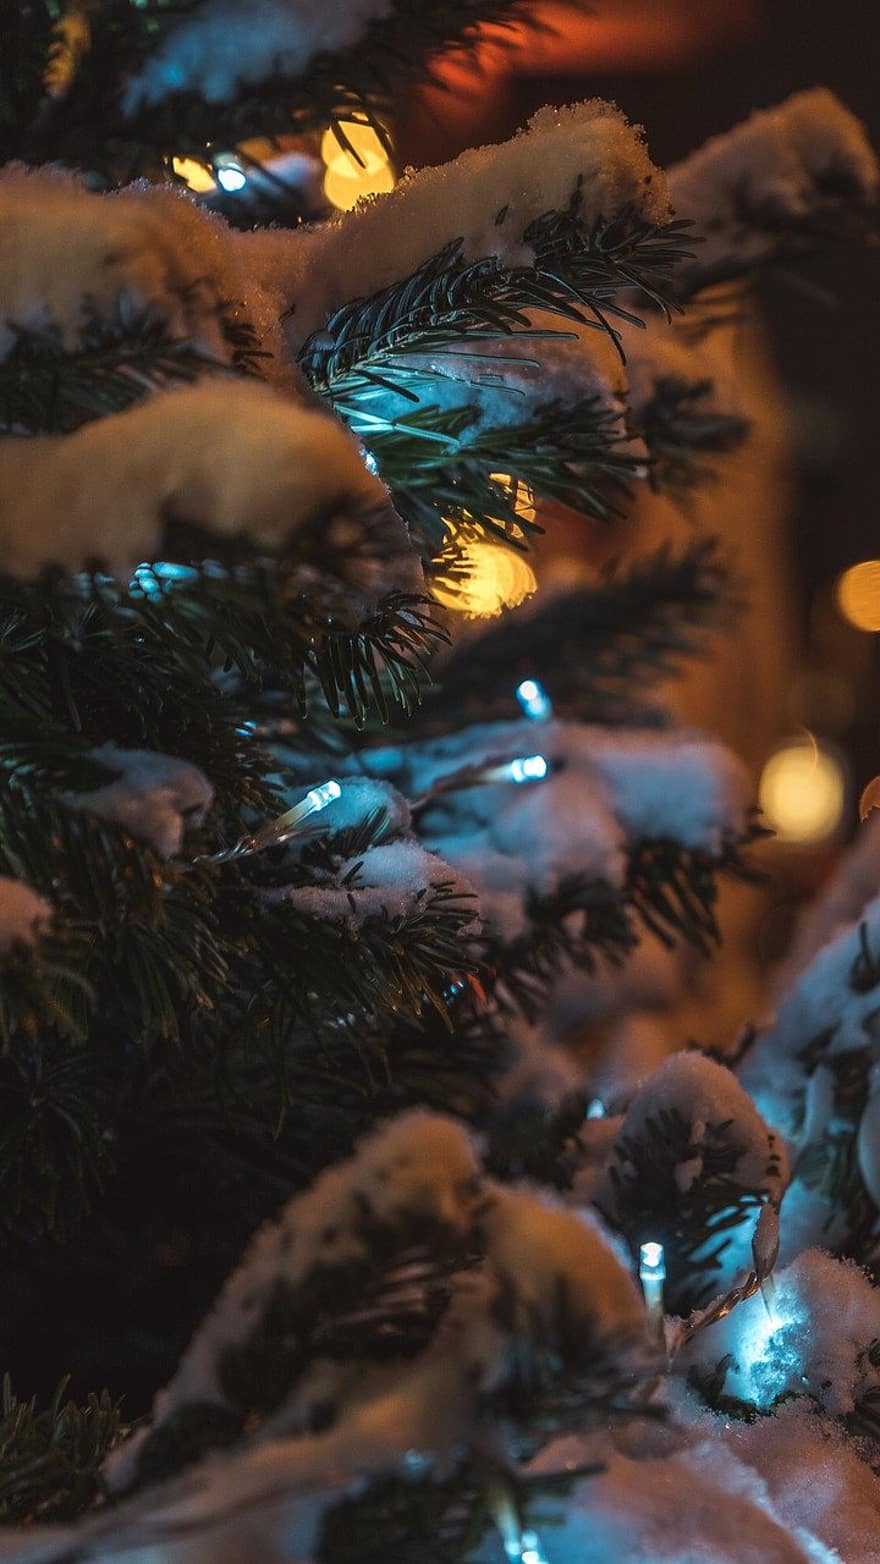 クリスマスツリー、松の木、雪、ライト、木、冬、休日、きらきら、シーズン、デコレーション、お祝い